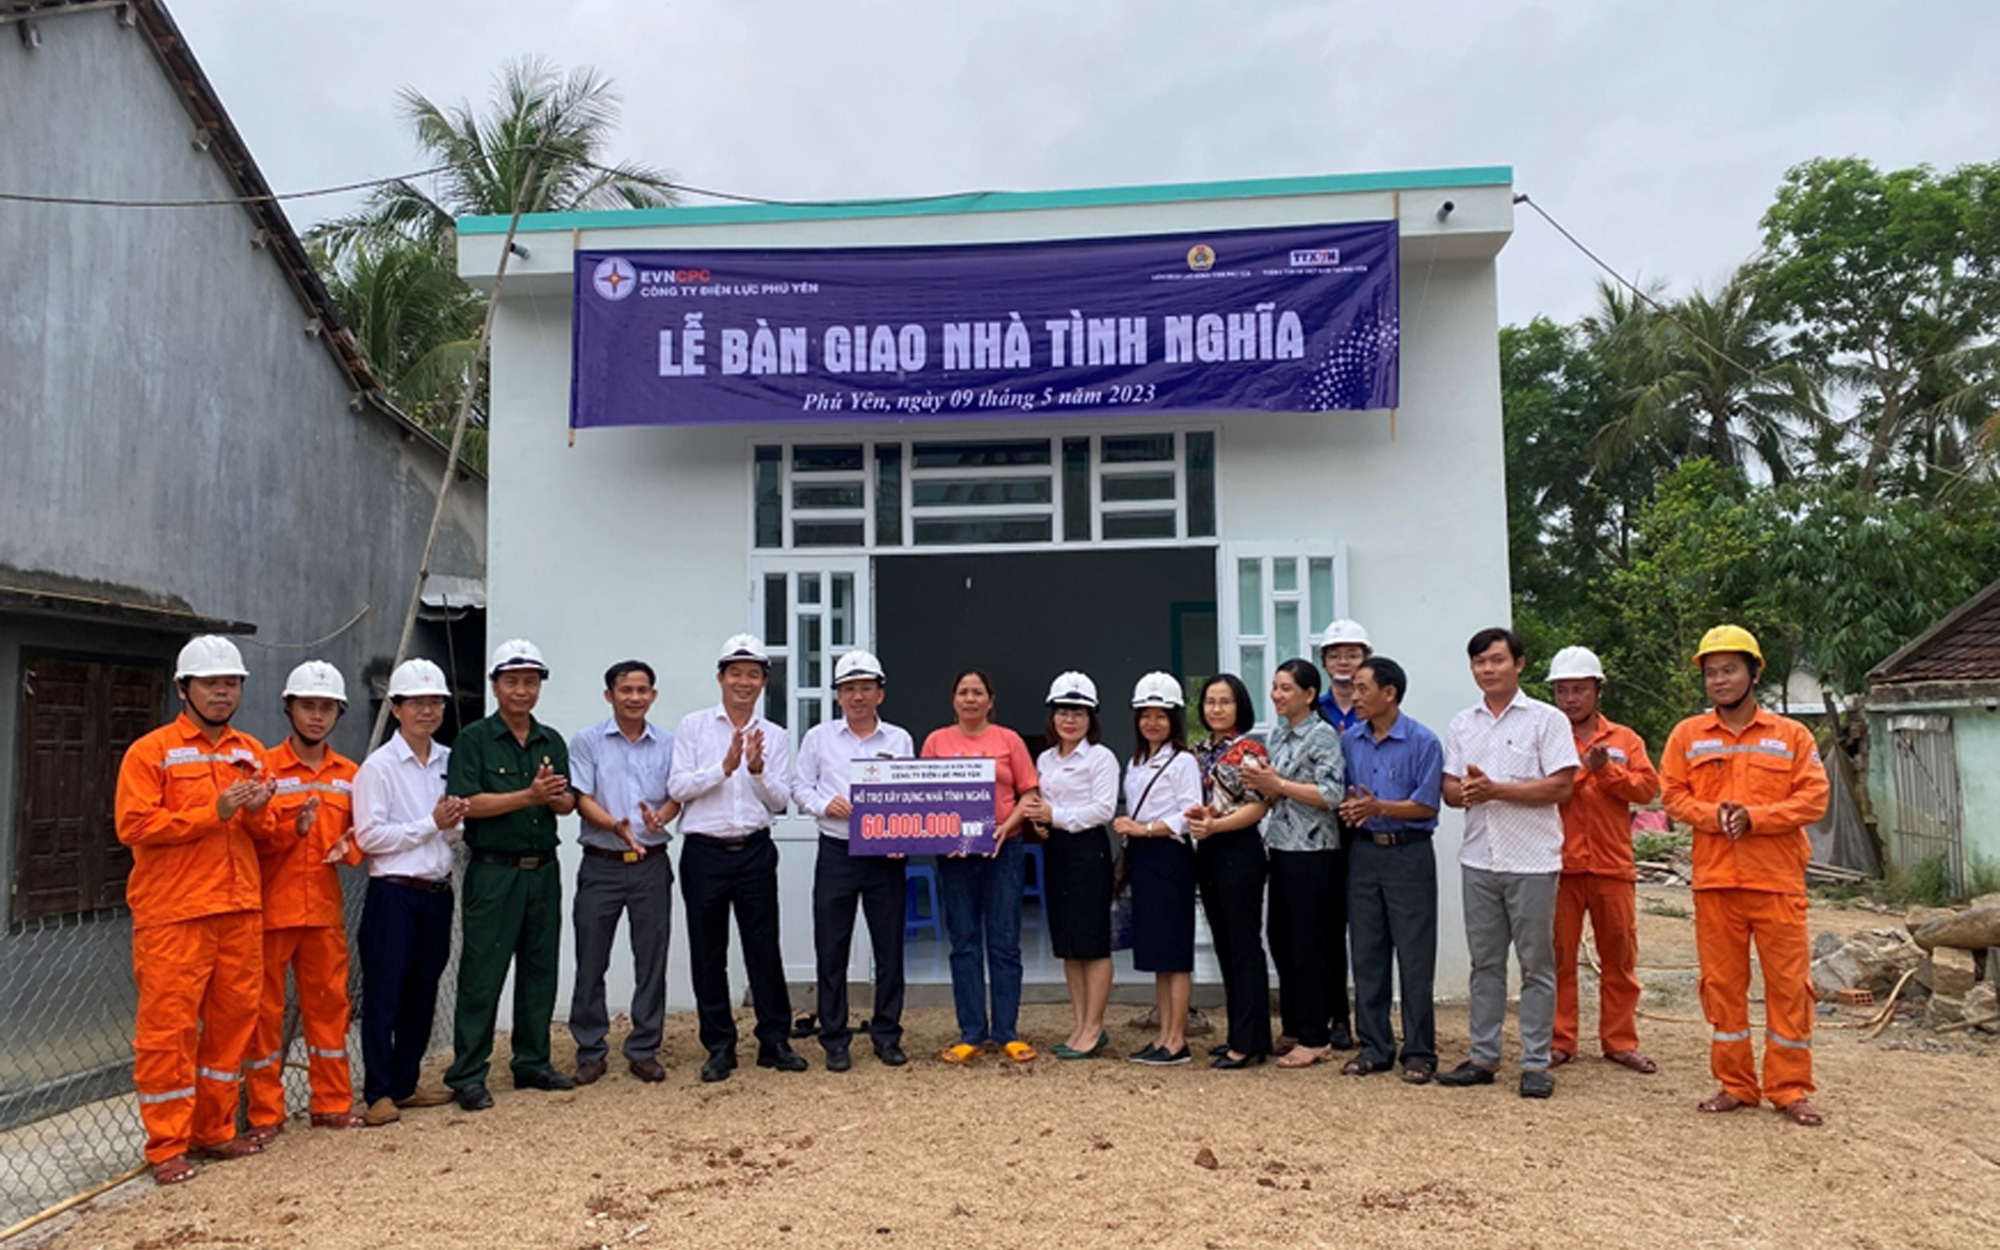 Điện lực Phú Yên bàn giao nhà tình nghĩa cho hộ nghèo ở Đa Lộc